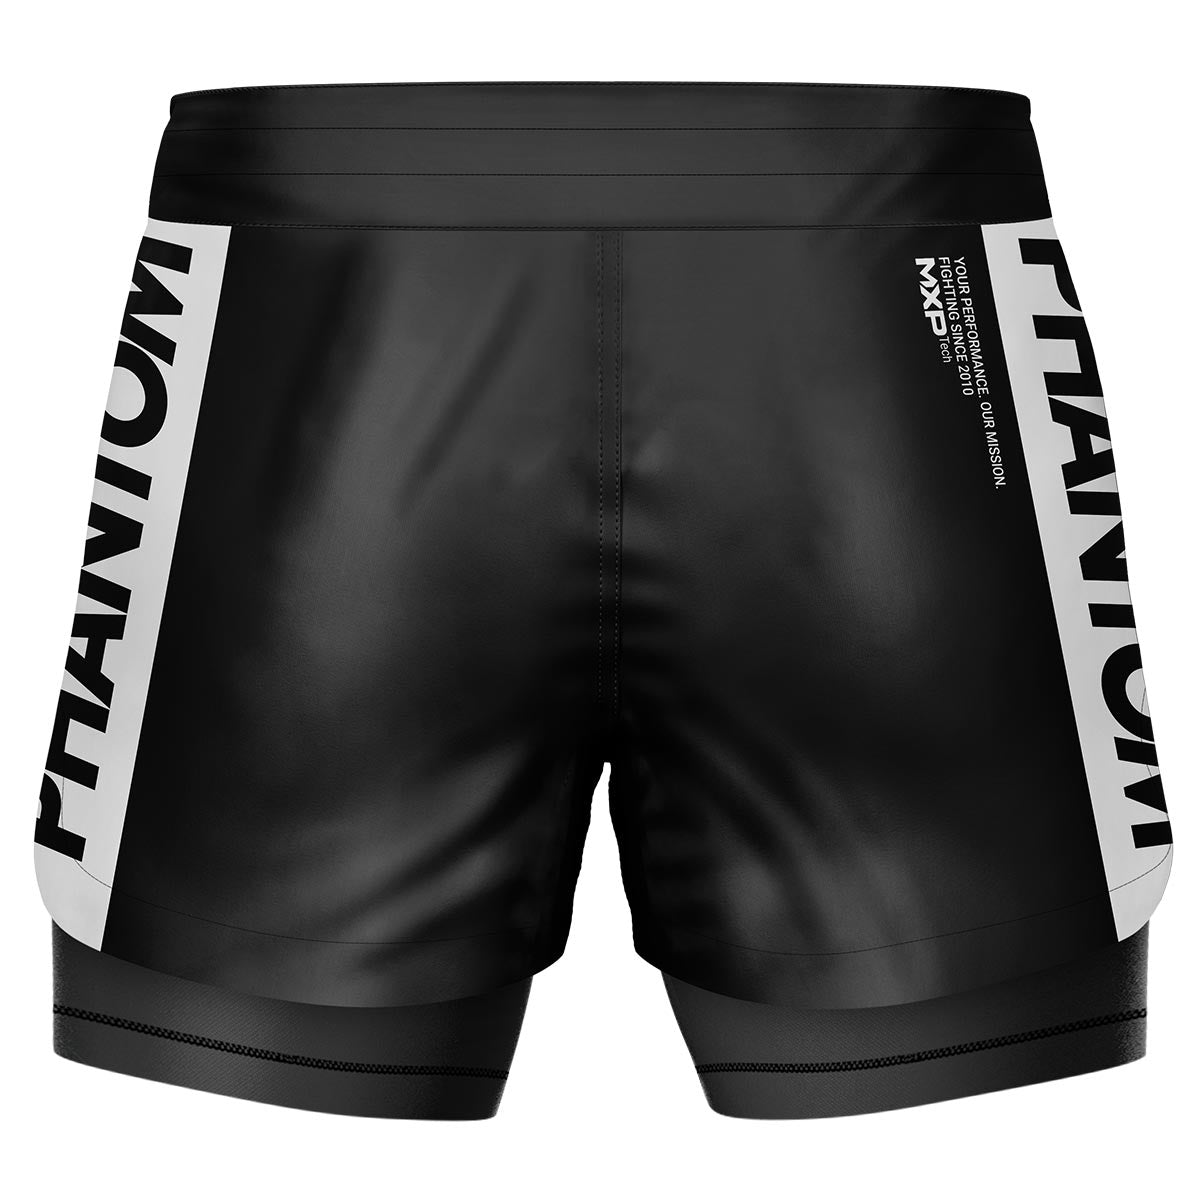 Phantom Fightshorts Fusion 2in1. Ultimative Shorts für deinen Kampfsport mit integrierter Compression Shorts. Ideal für MMA, BJJ, Ringen, Grappling oder Muay Thai. In schwarz mit PHANTOM Schriftzug.